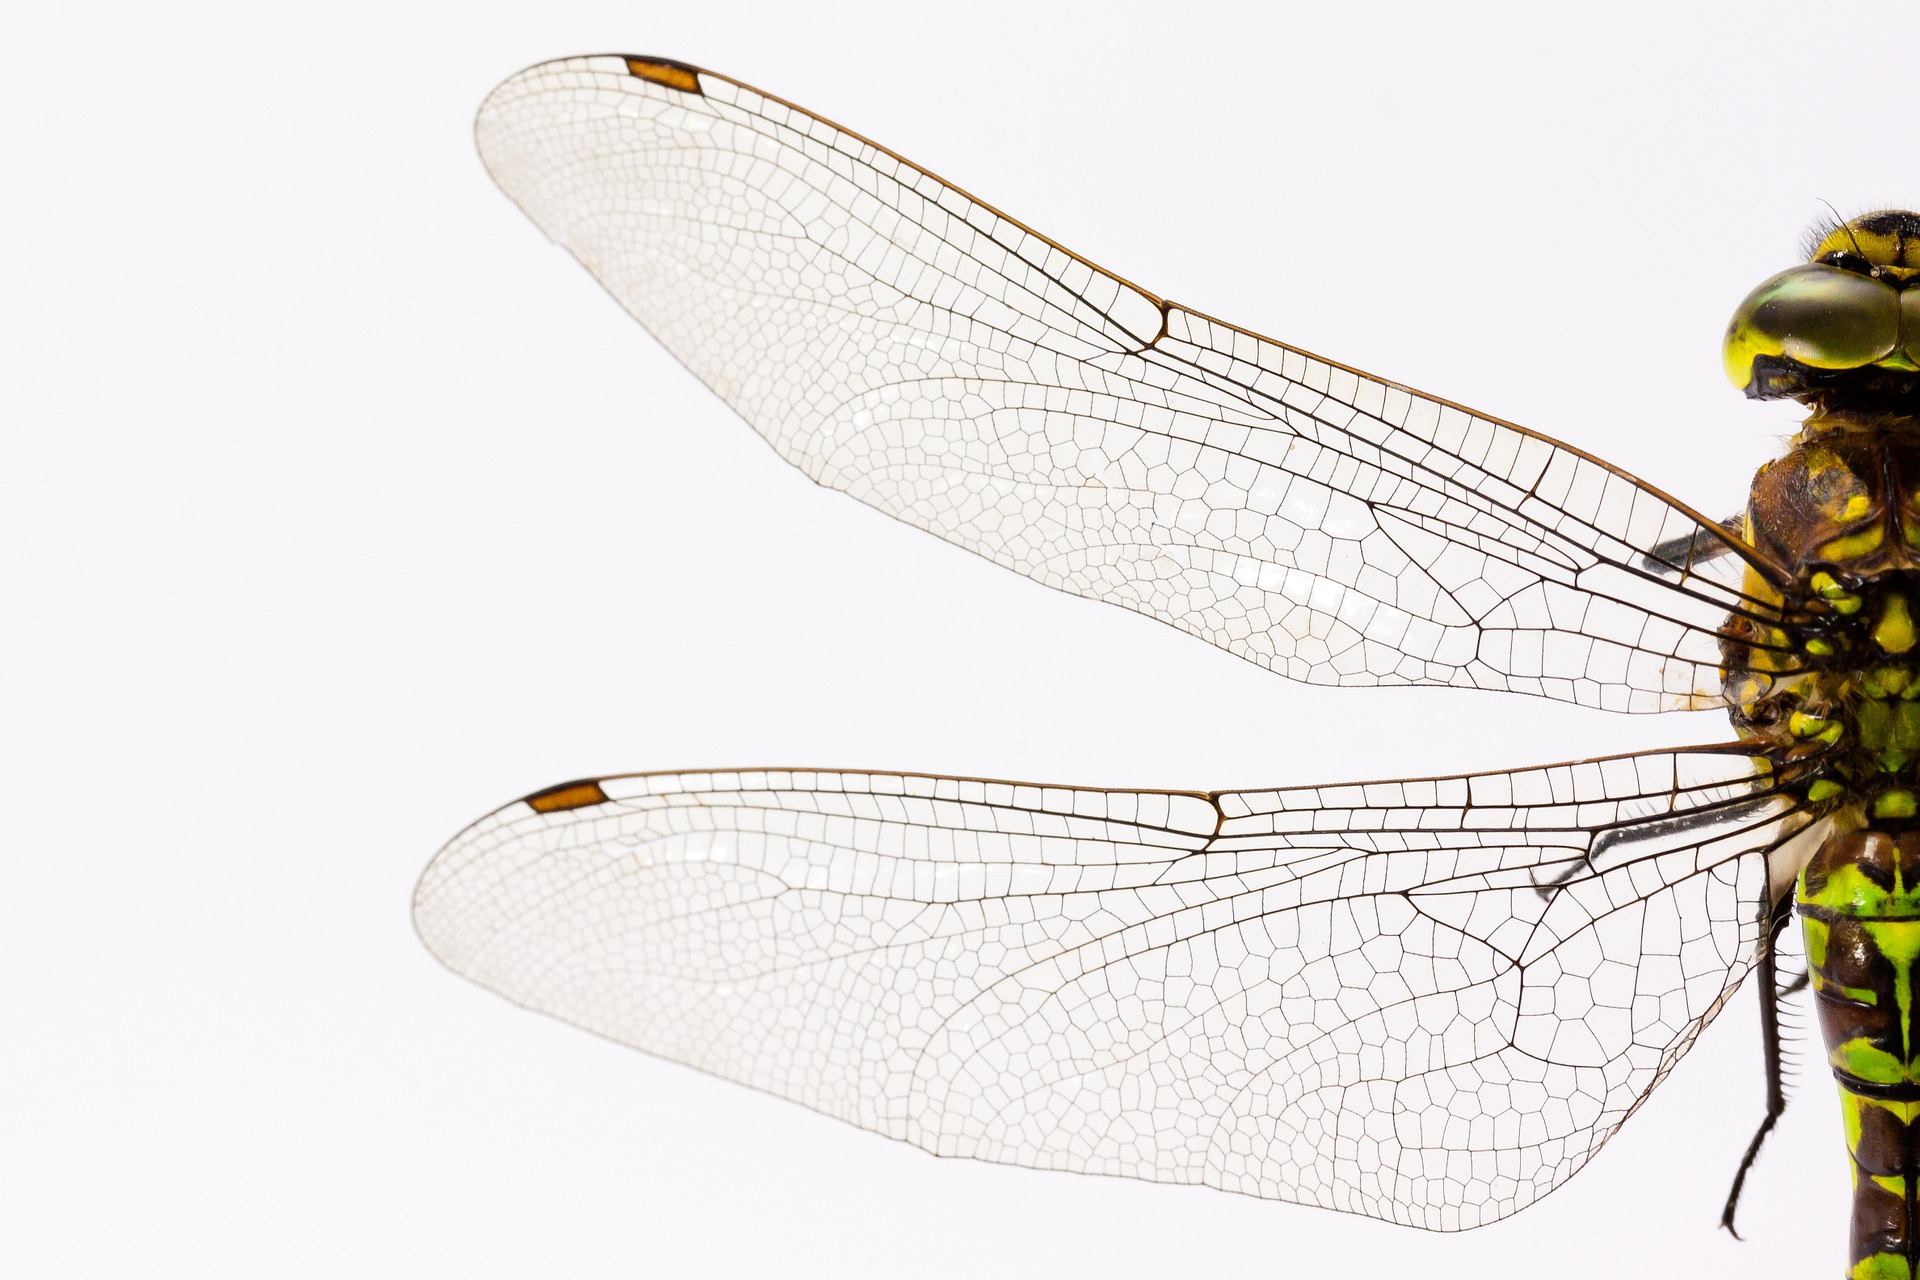 鳥の描き方 簡単なイラスト 天使の羽 孔雀 鳳凰 フクロウ 鶴の家紋まで 脳トレになる曼荼羅アートセラピー